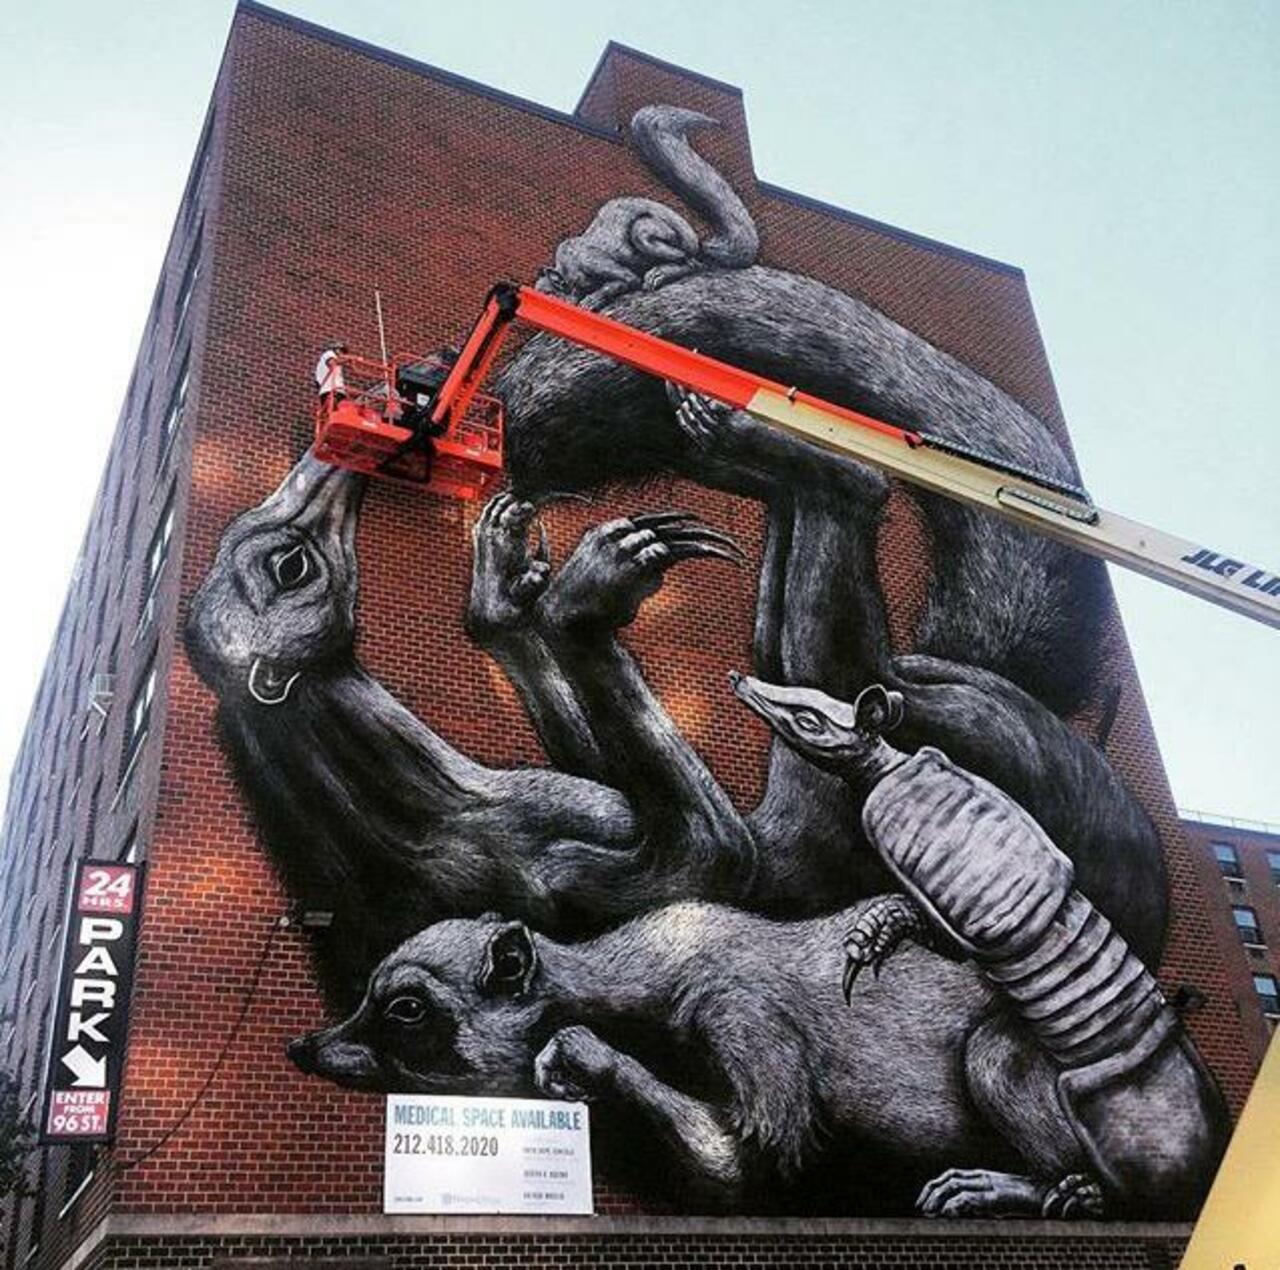 Street Art in progress by ROA in NYC

#art #graffiti #mural #streetart http://t.co/mvu1i0f9Yh